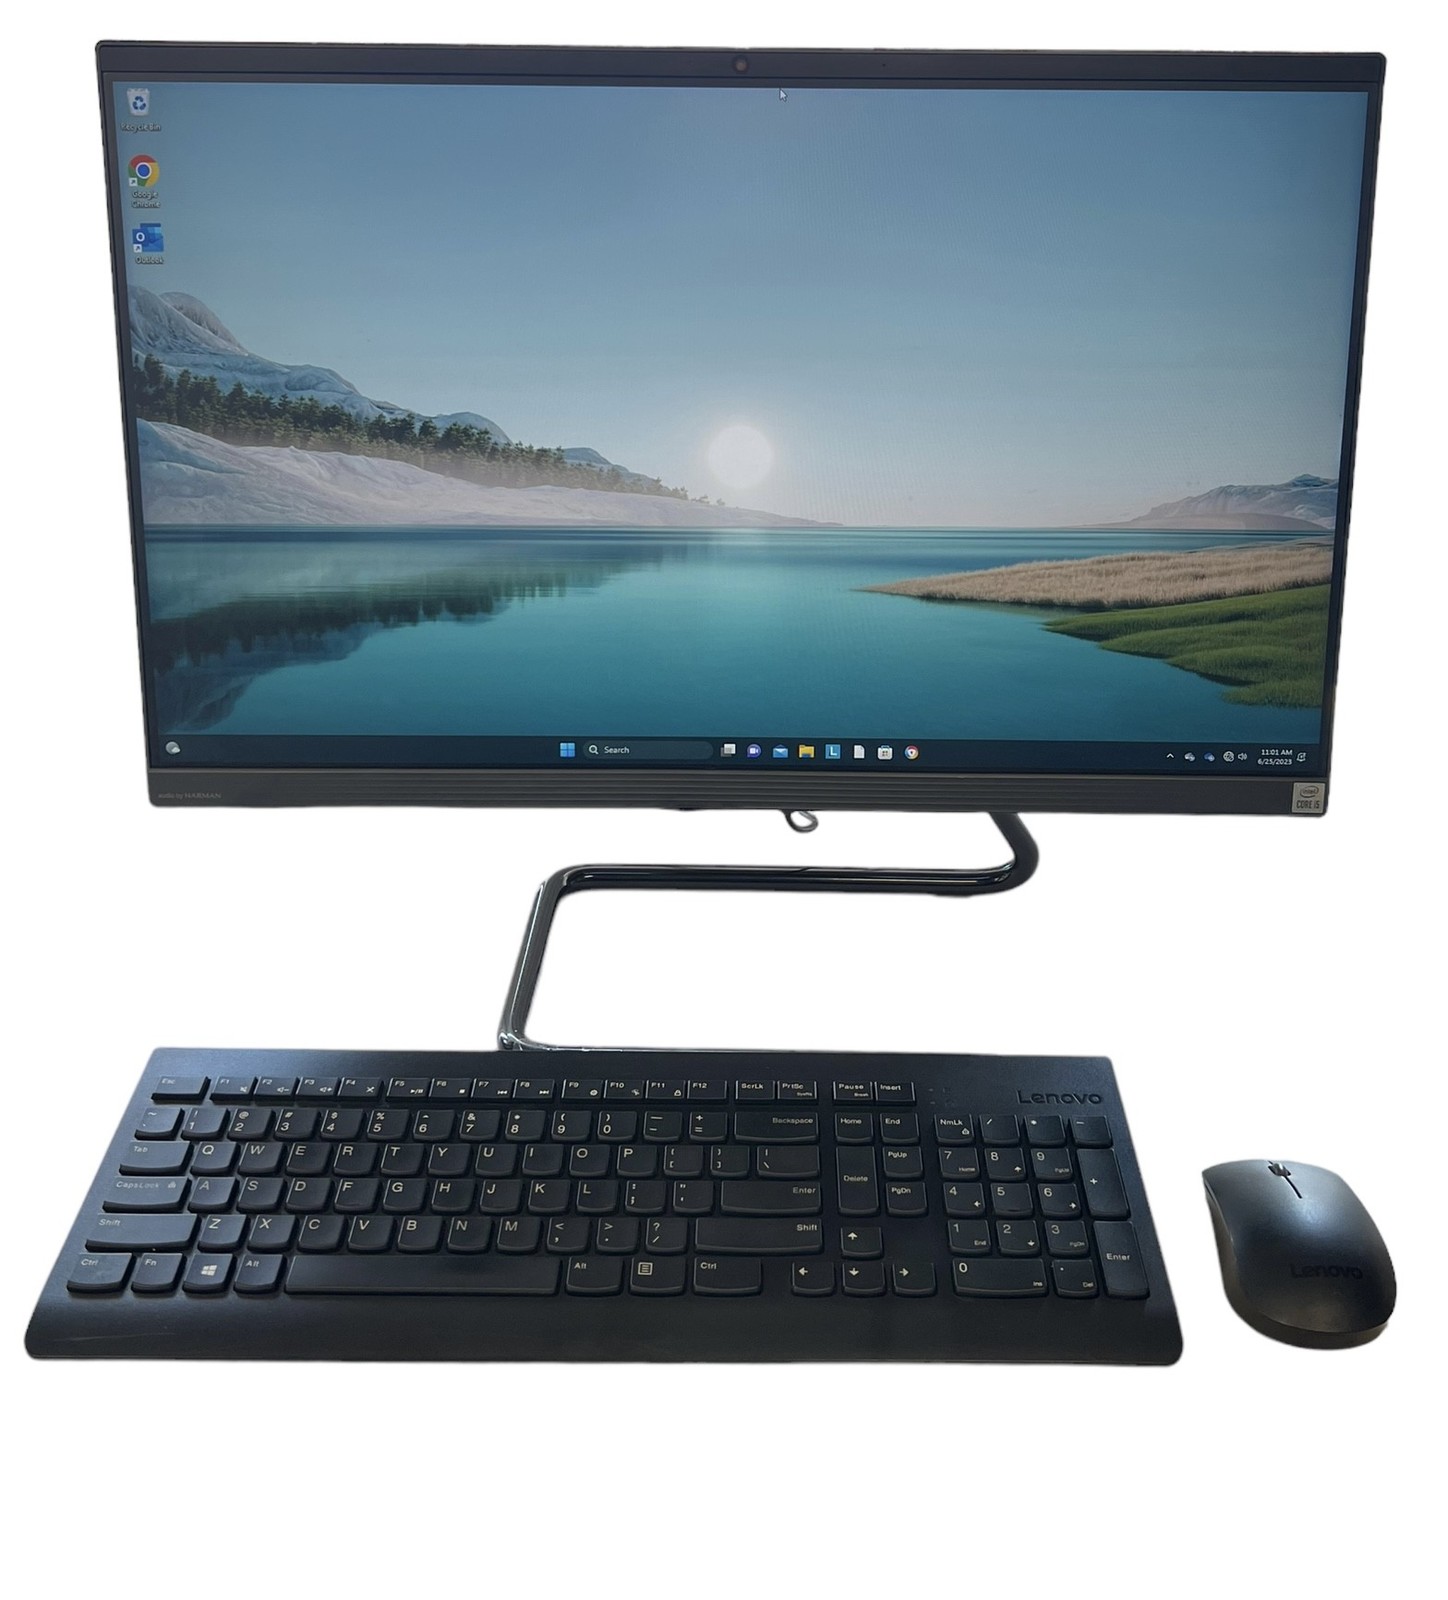 Lenovo Desktop Mpnxs151700r 377760 - $299.00